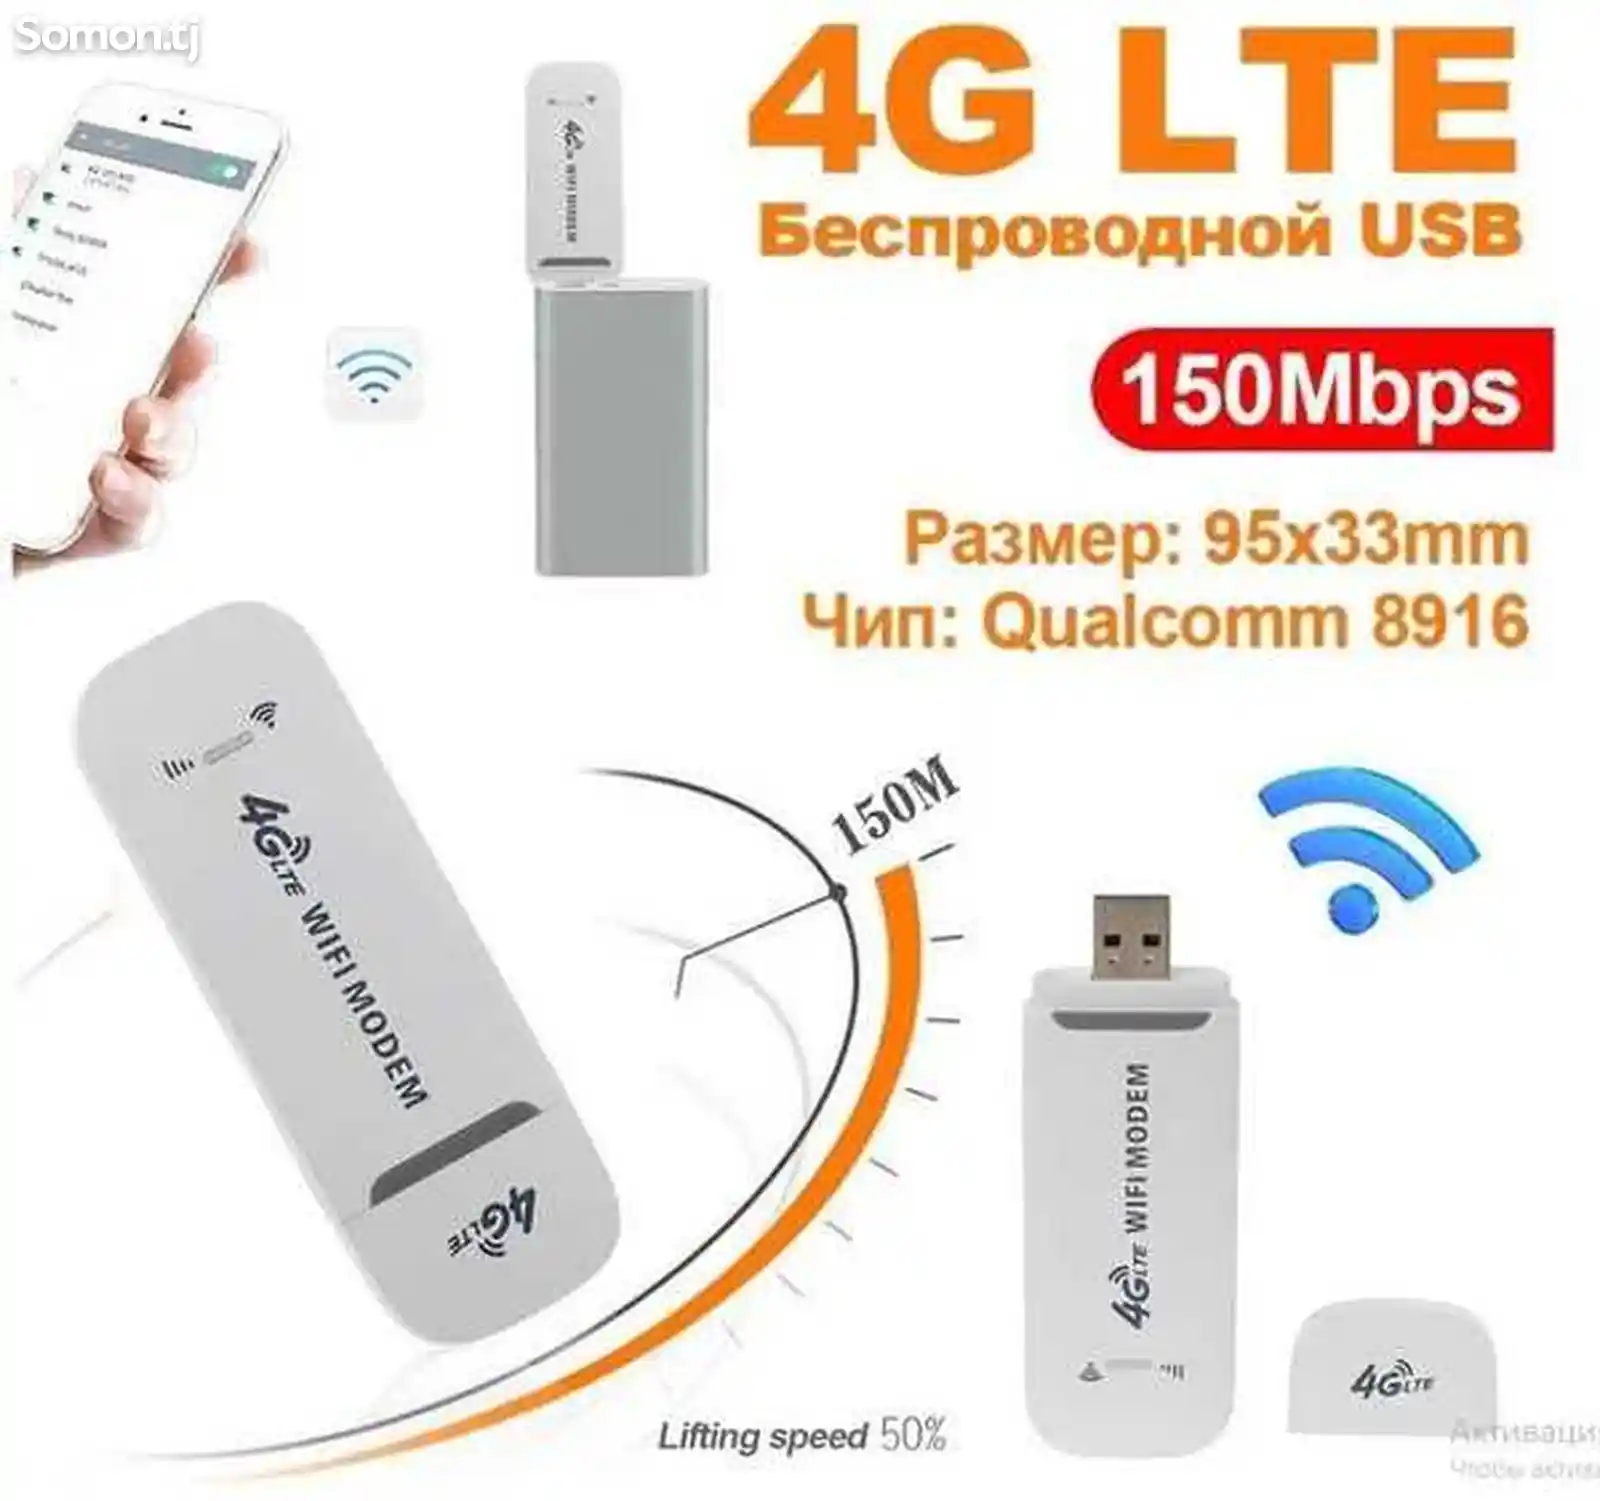 Модем роутер 4G LTE / USB универсальная патходит люби симк Тачикистан и друг стр-9